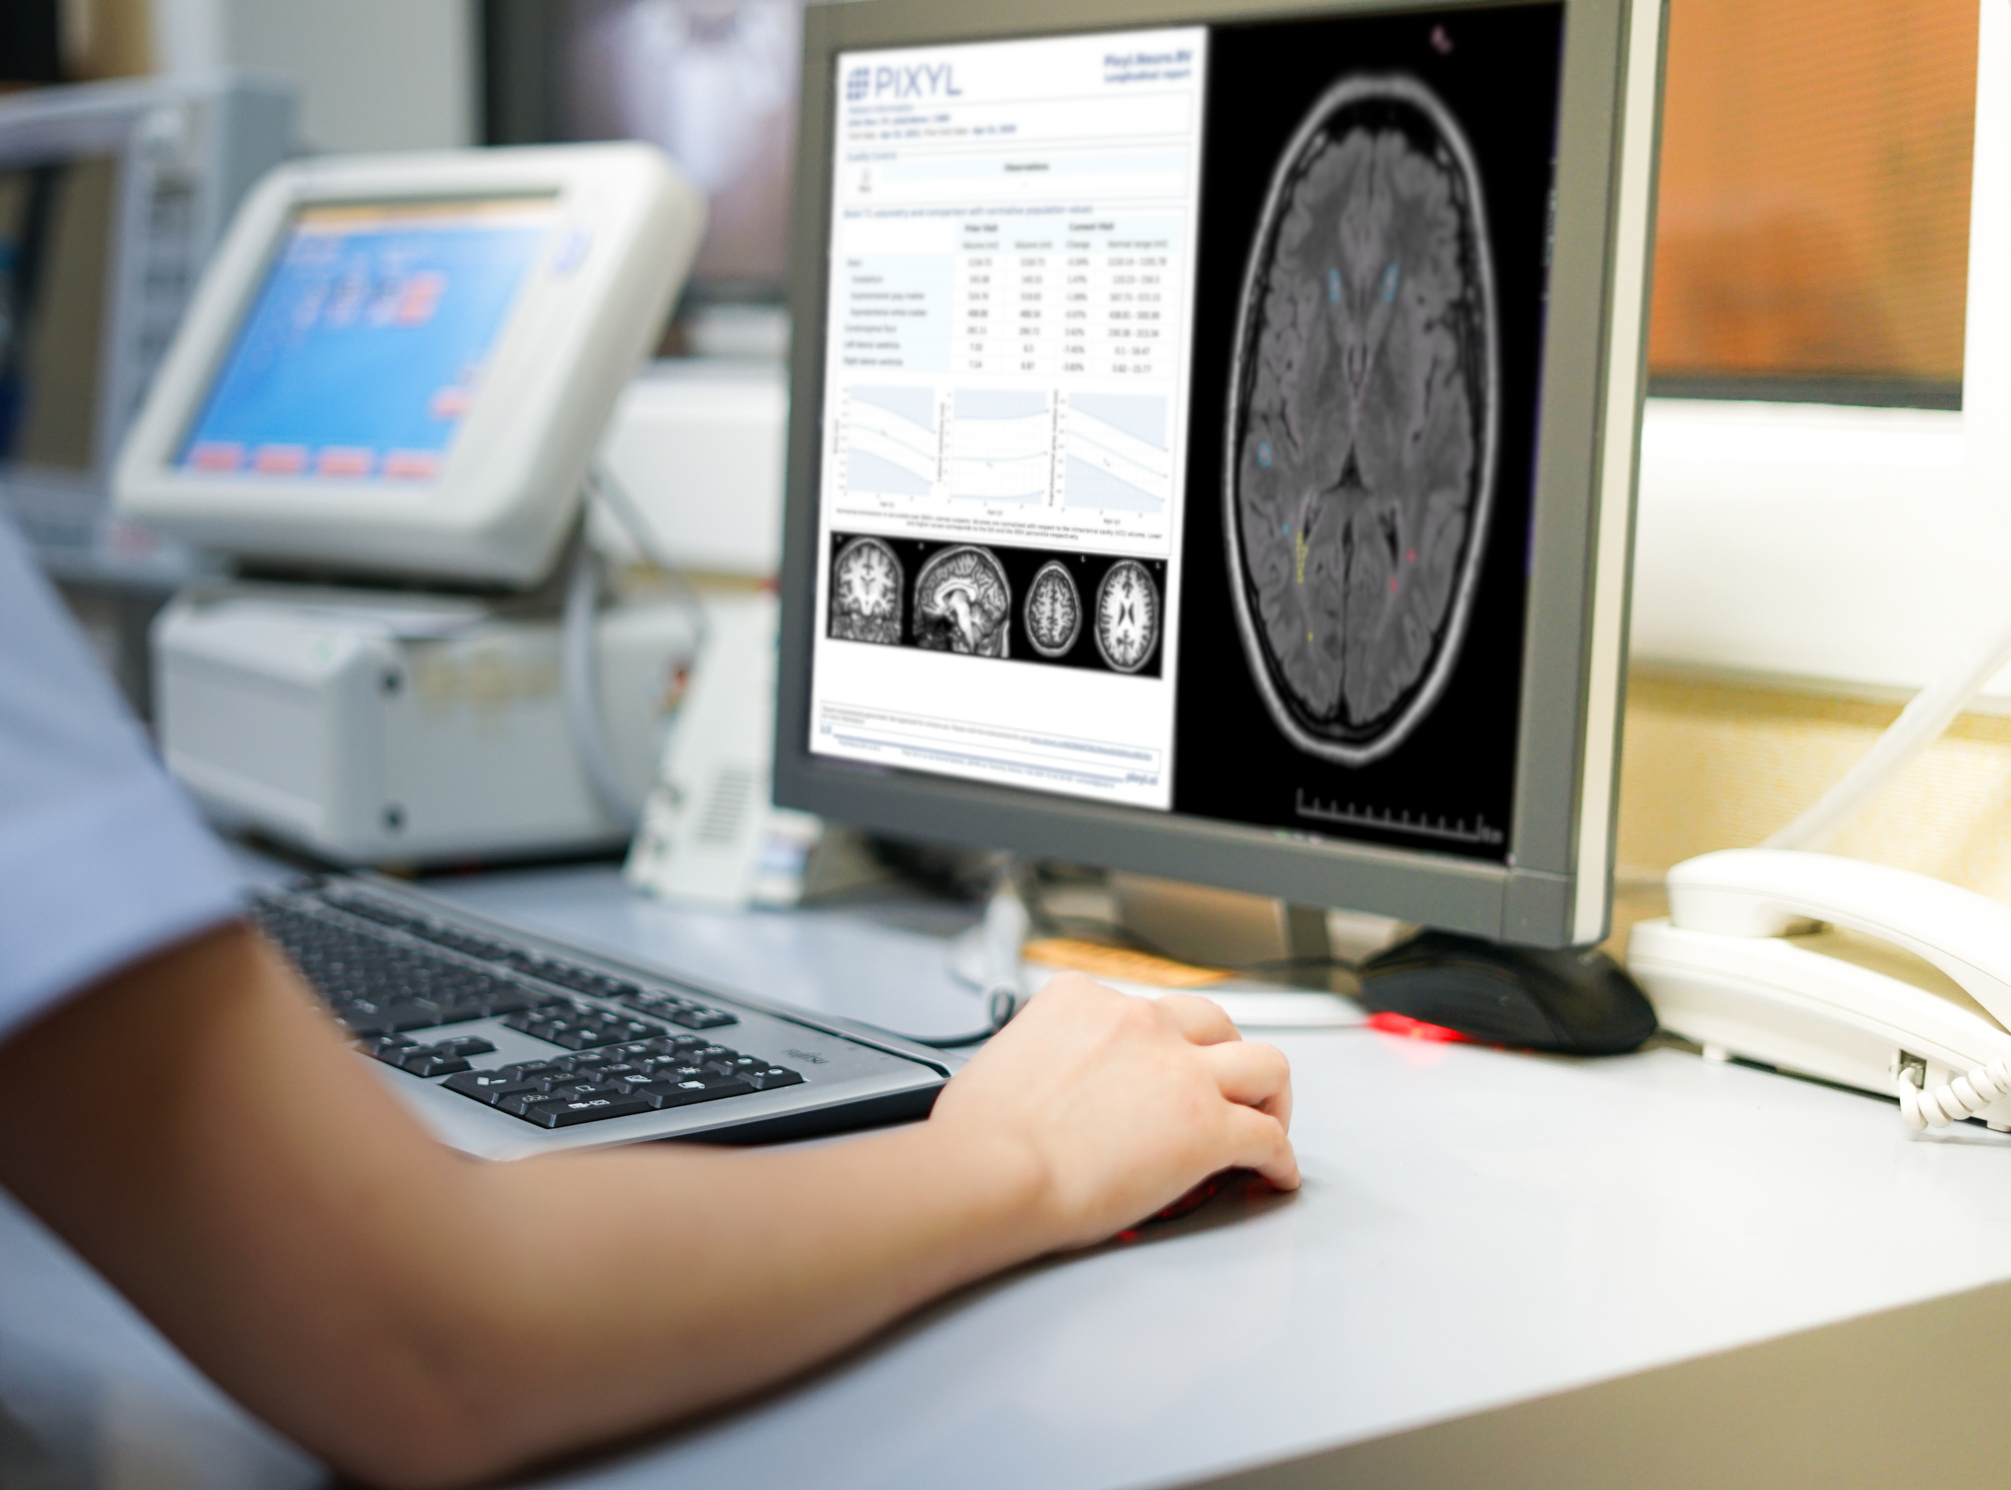 Medtech : Pixyl veut prédire l'évolution des maladies neurodégénératives grâce à l'IA